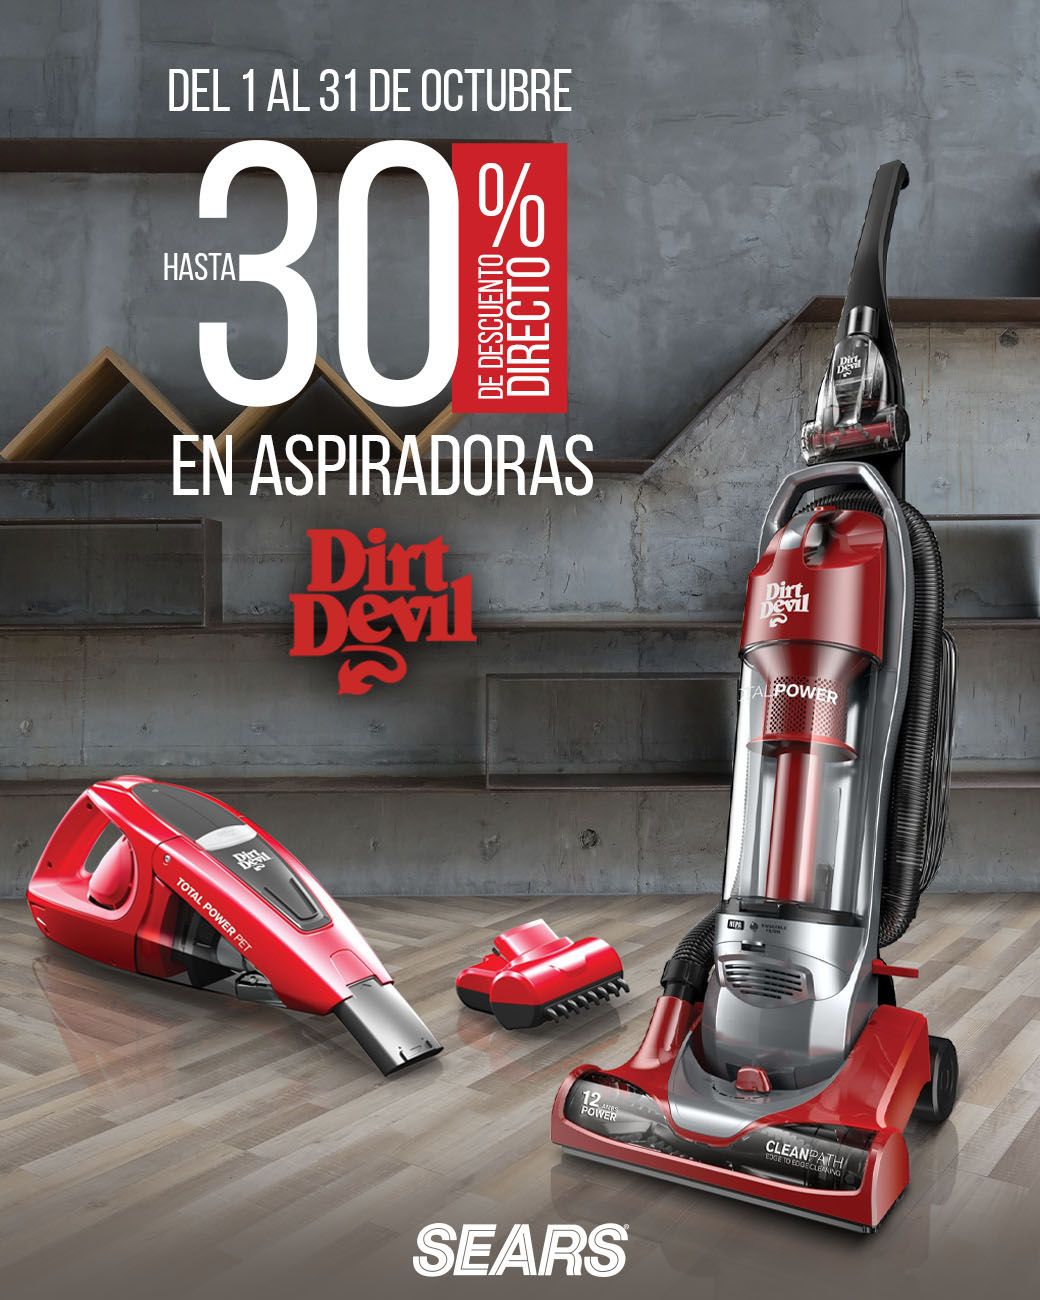 matrimonio triste Contracción Sears México on Twitter: "Tu casa quedará impecable con una aspiradora  #DirtDevil. ¡Ven y aprovecha esta promoción! #SearsMeEntiende  https://t.co/Auqu6ORoLT" / Twitter